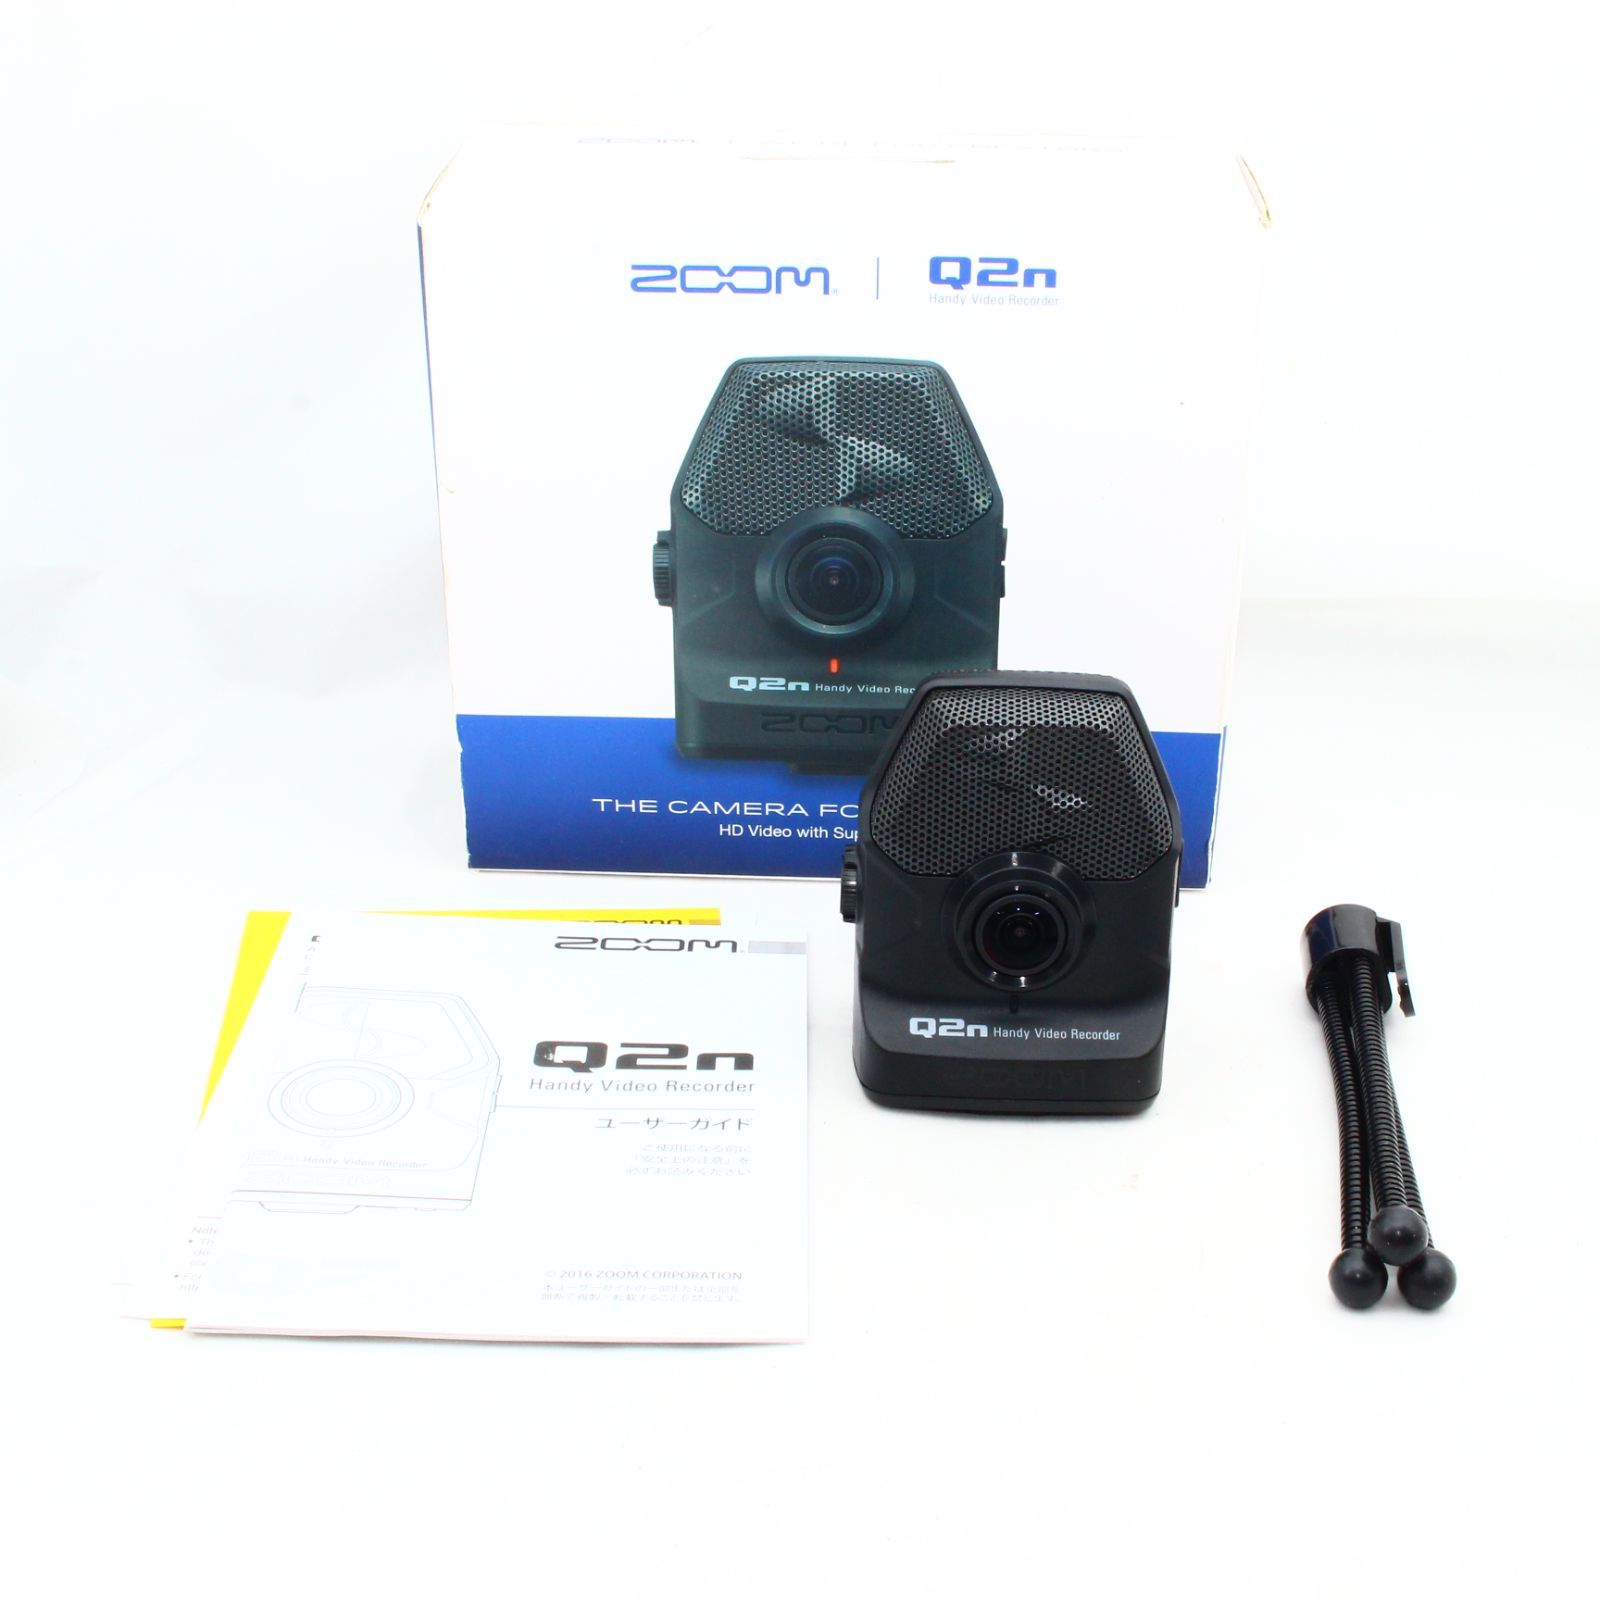 ZOOM ズーム ハンディビデオレコーダー ハイレゾ音質 Q2n-4K - メルカリ